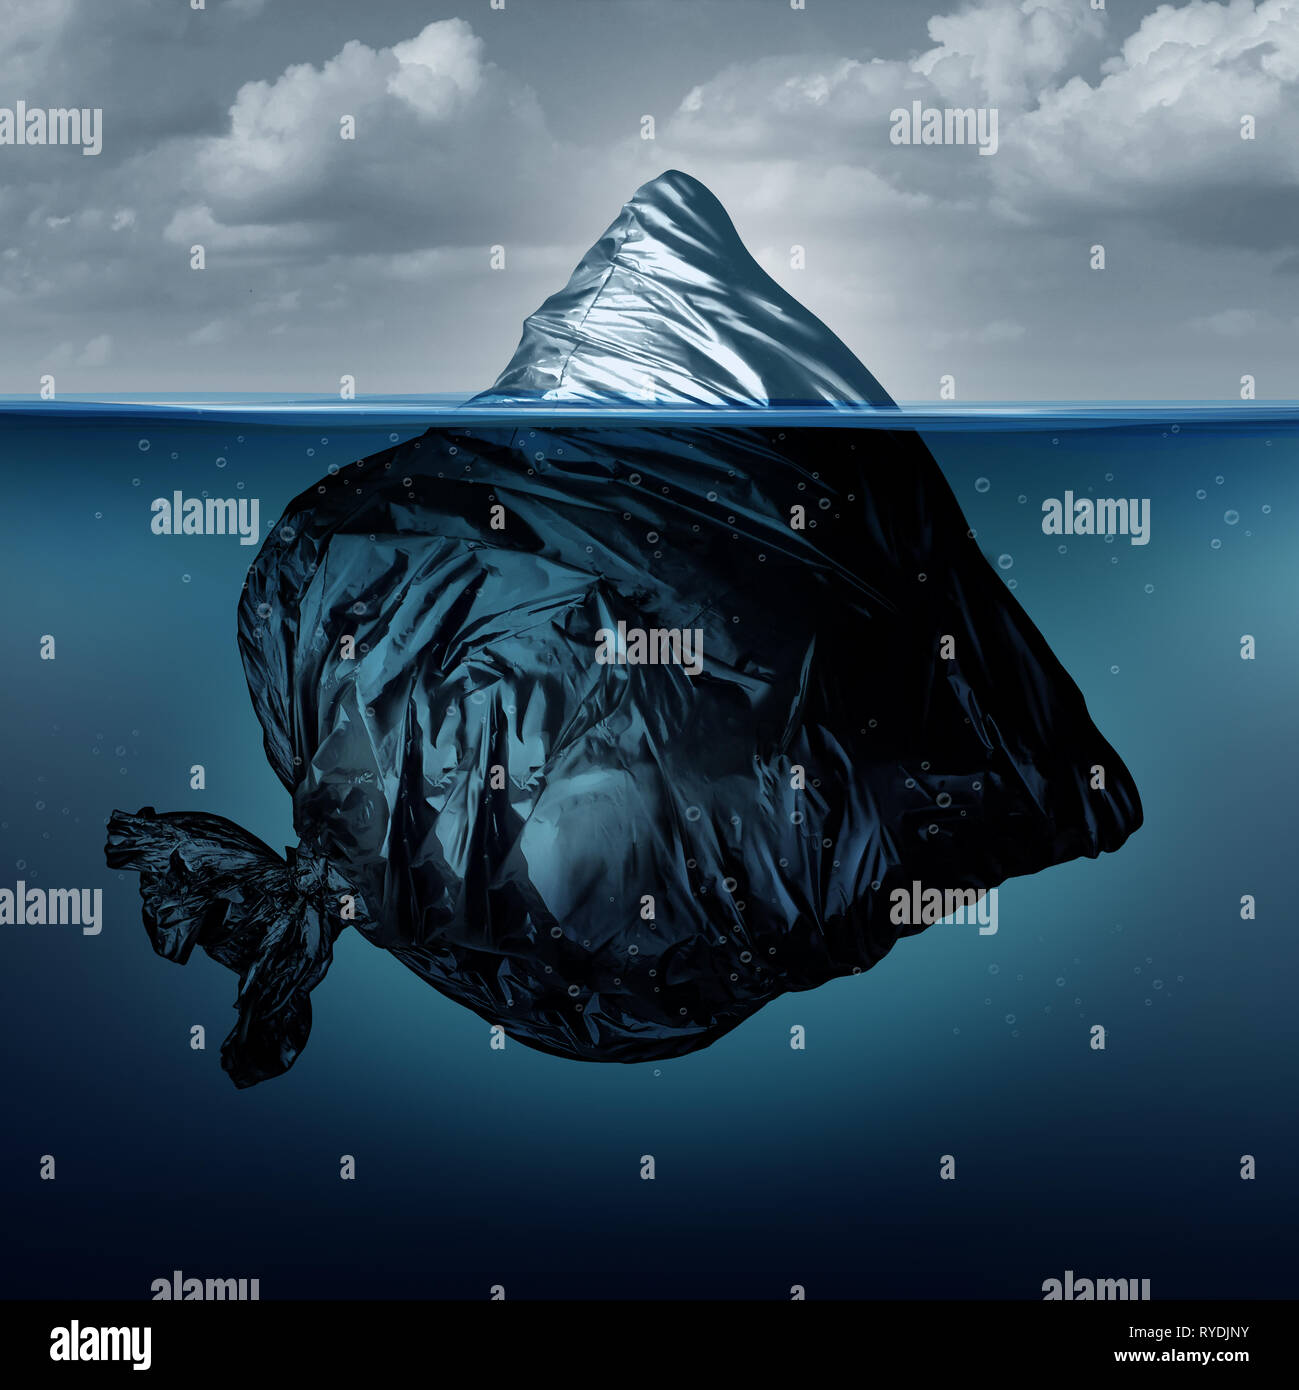 Cestino iceberg come un sacchetto di immondizia iceberg nell'oceano o mare inquinato come un simbolo ambientale per l'inquinamento globale in un 3D illustrazione dello stile. Foto Stock